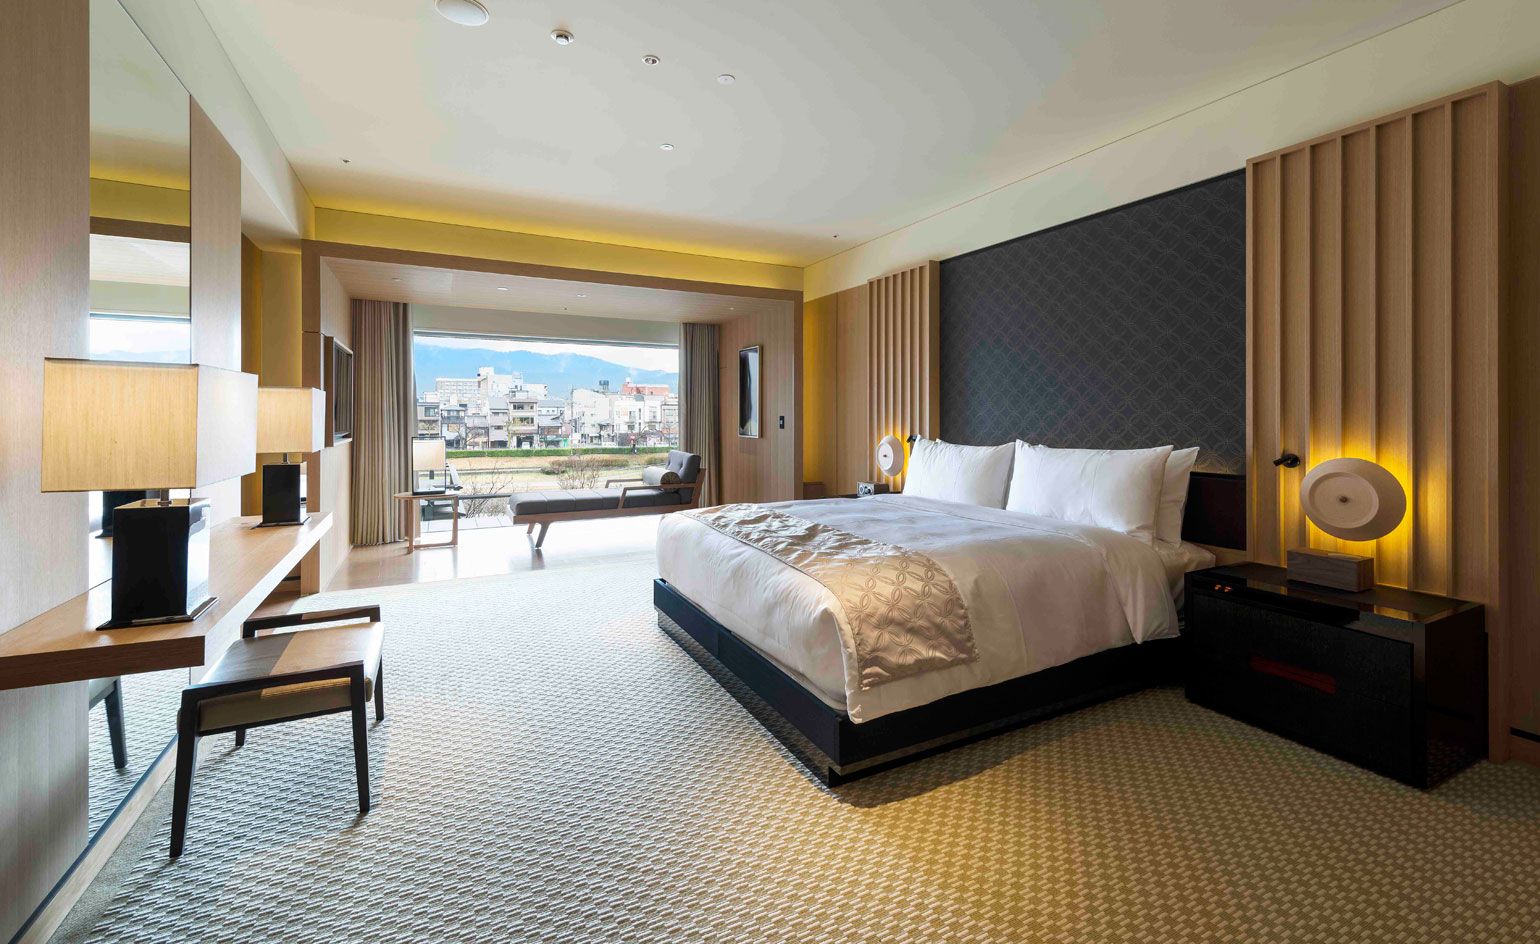 Ritz-carlton, Kyoto, Japan Best Urban Hotels - Bedroom , HD Wallpaper & Backgrounds